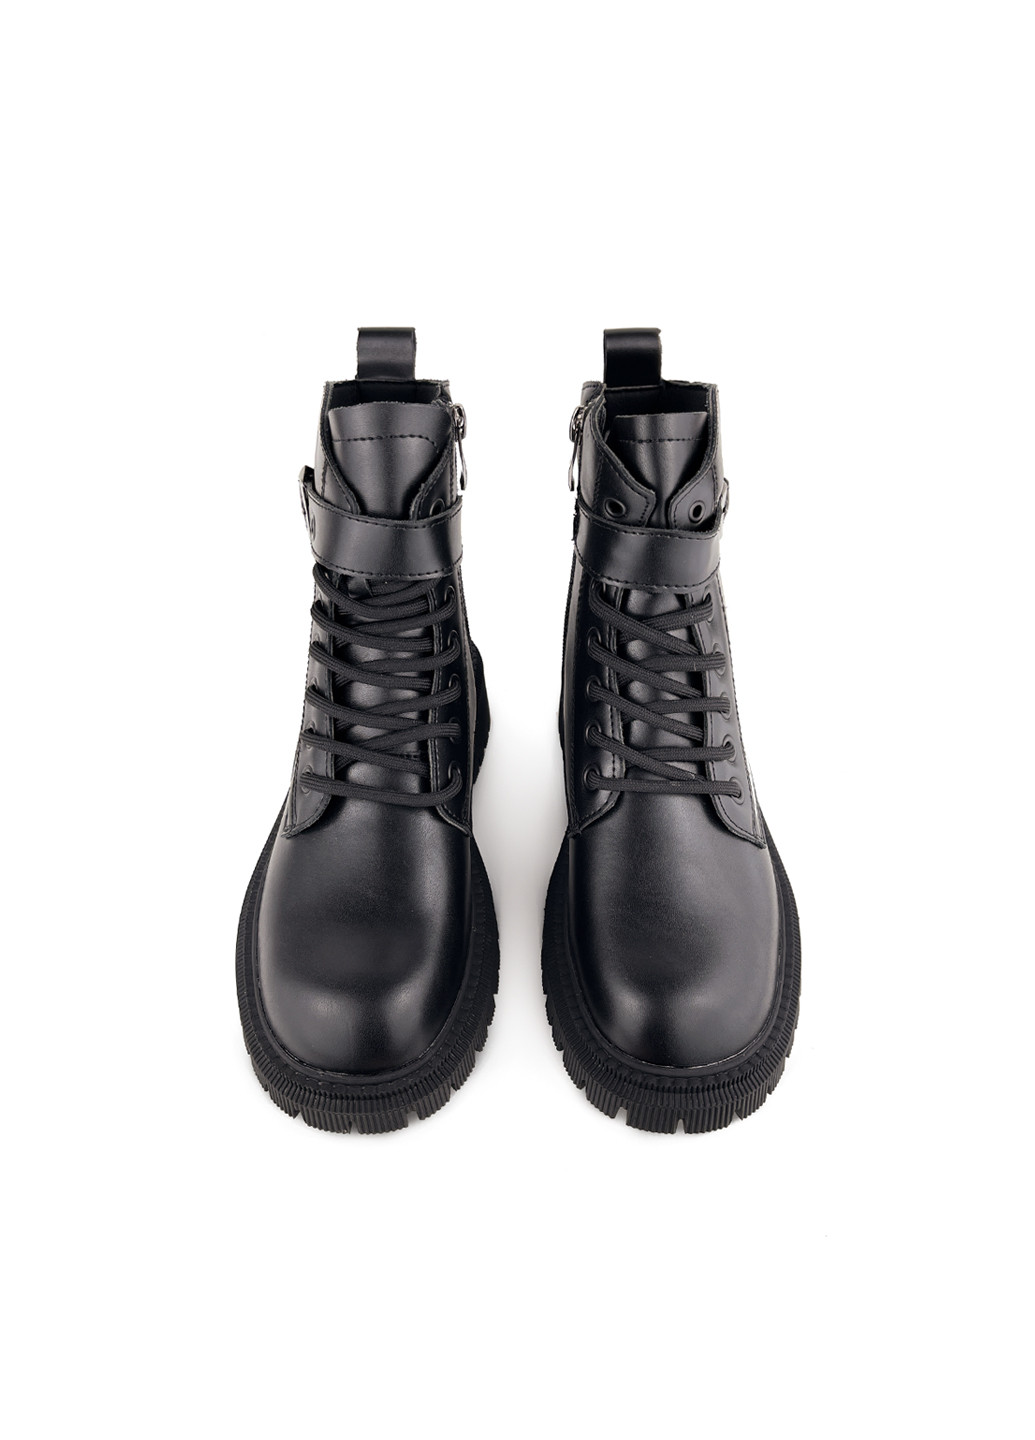 Осенние ботинки женские молодежные черные на тракторной подошве Fashion из искусственной кожи